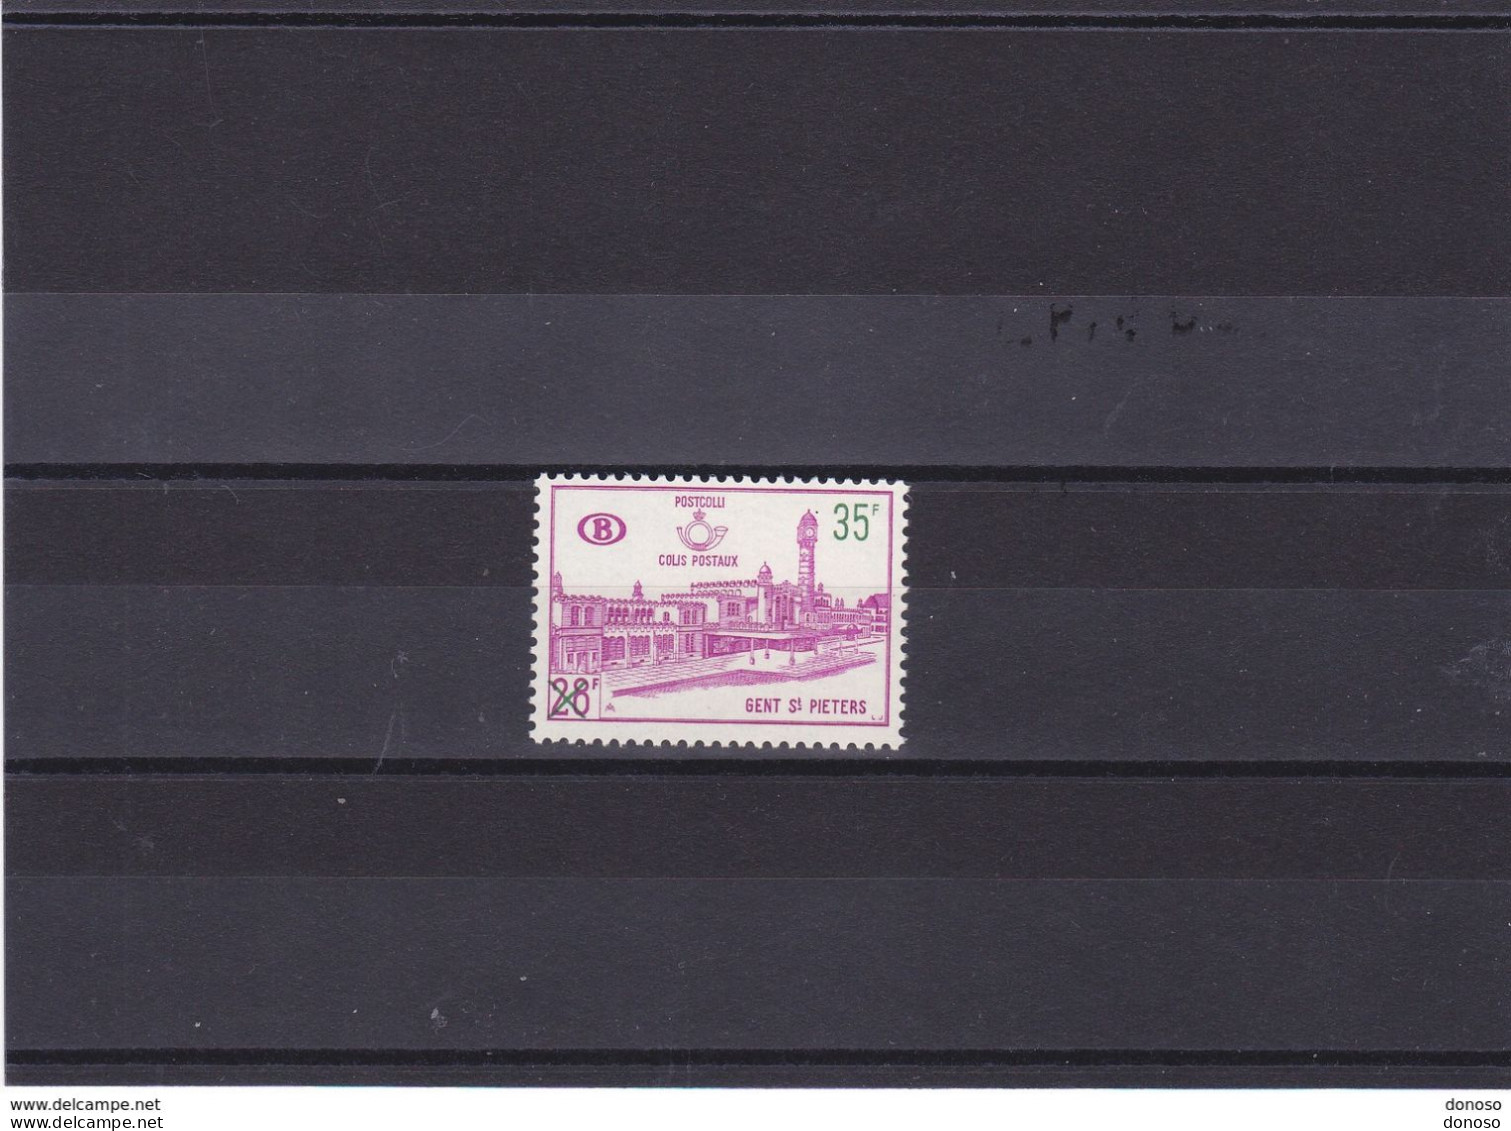 BELGIQUE 1966 GARE DE GAND Yvert 377 NEUF** MNH Cote 6 Euros - Neufs